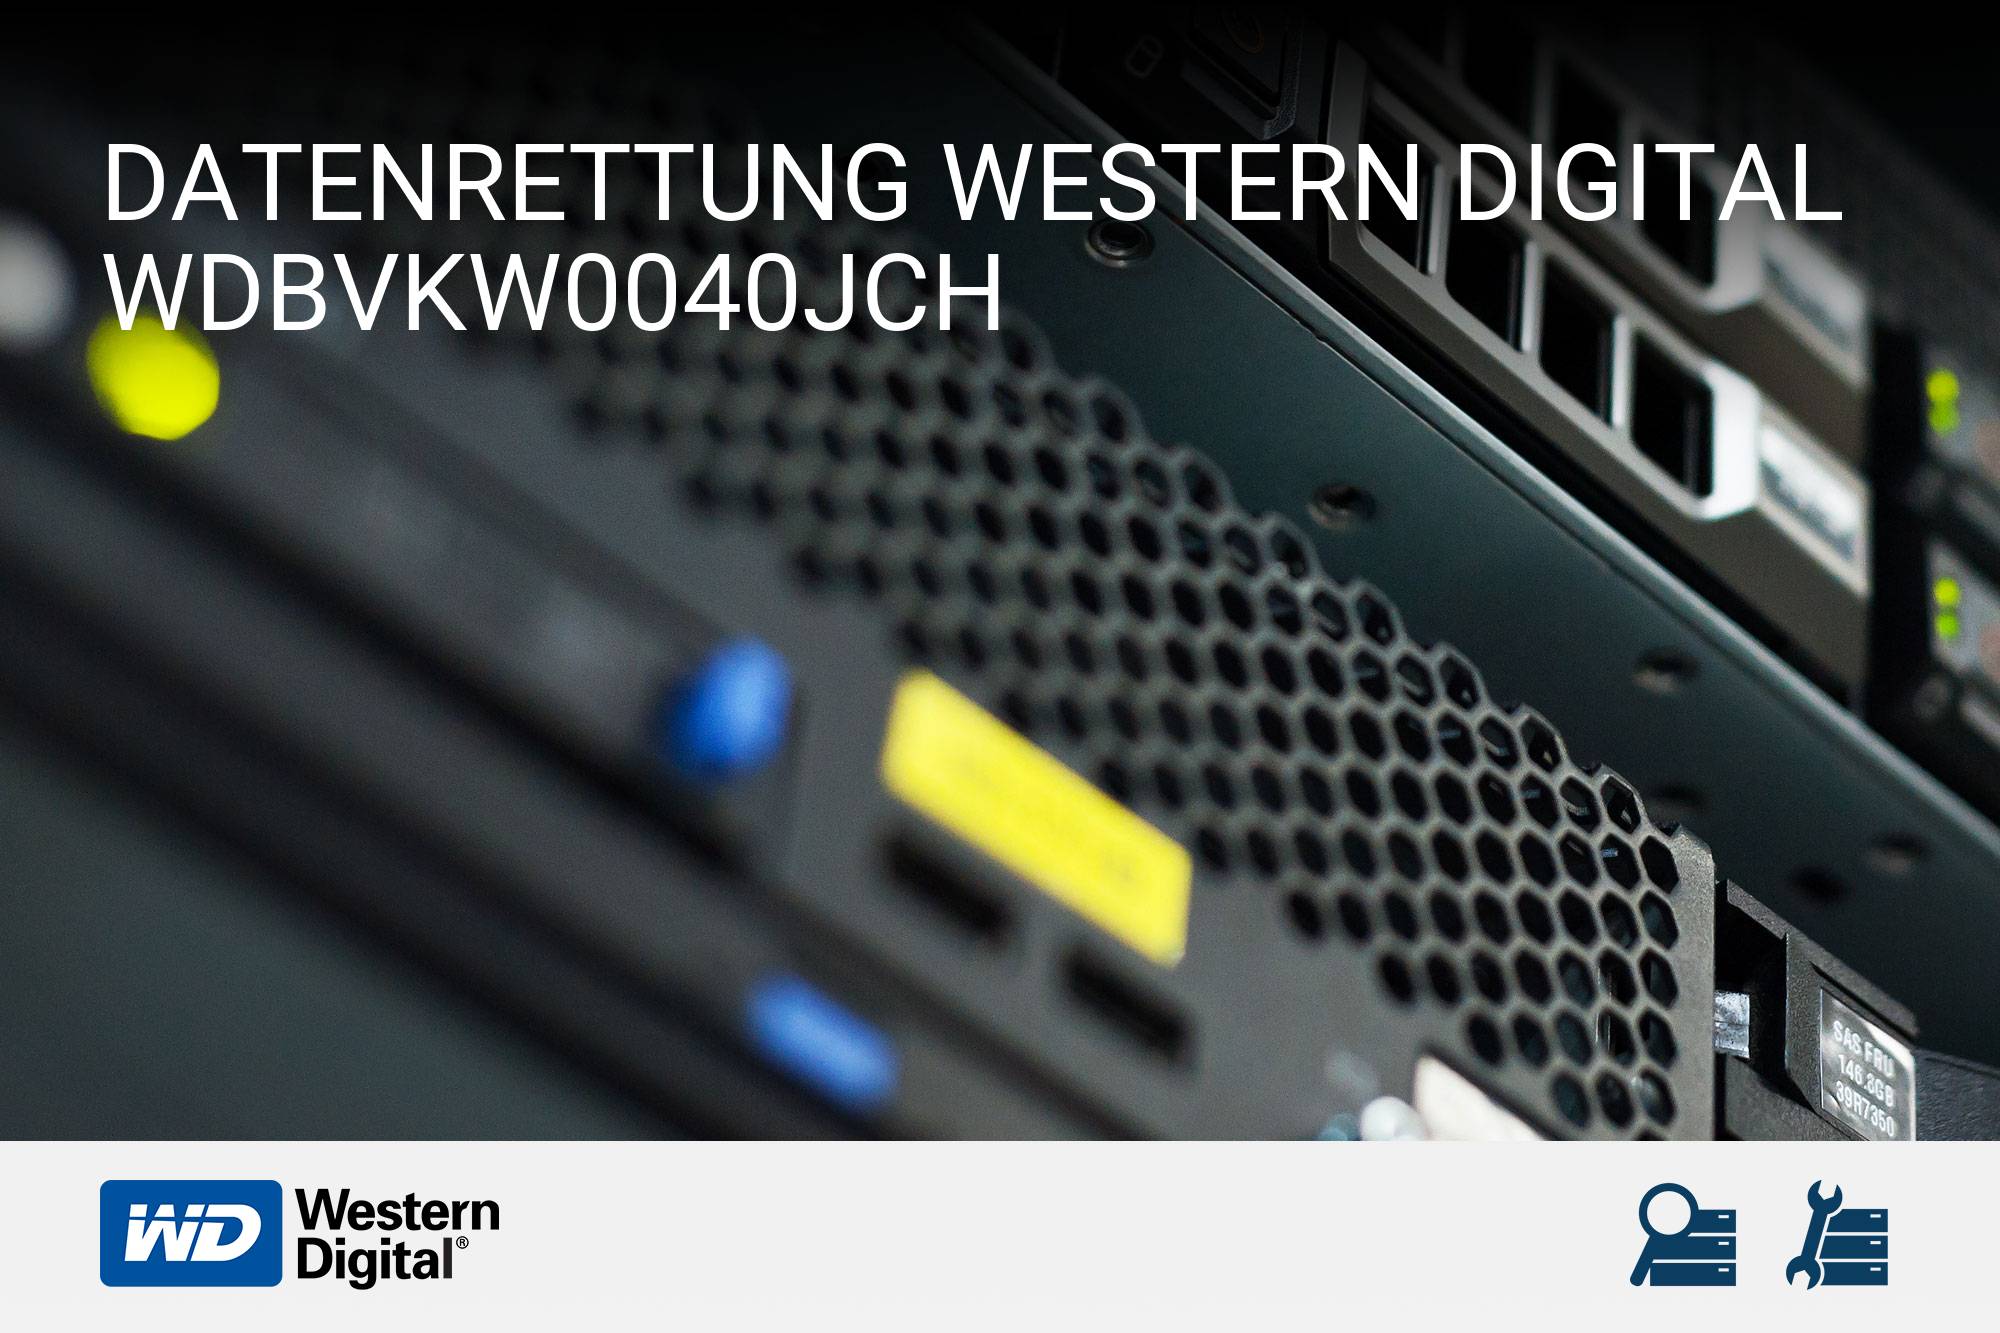 Western Digital WDBVKW0040JCH